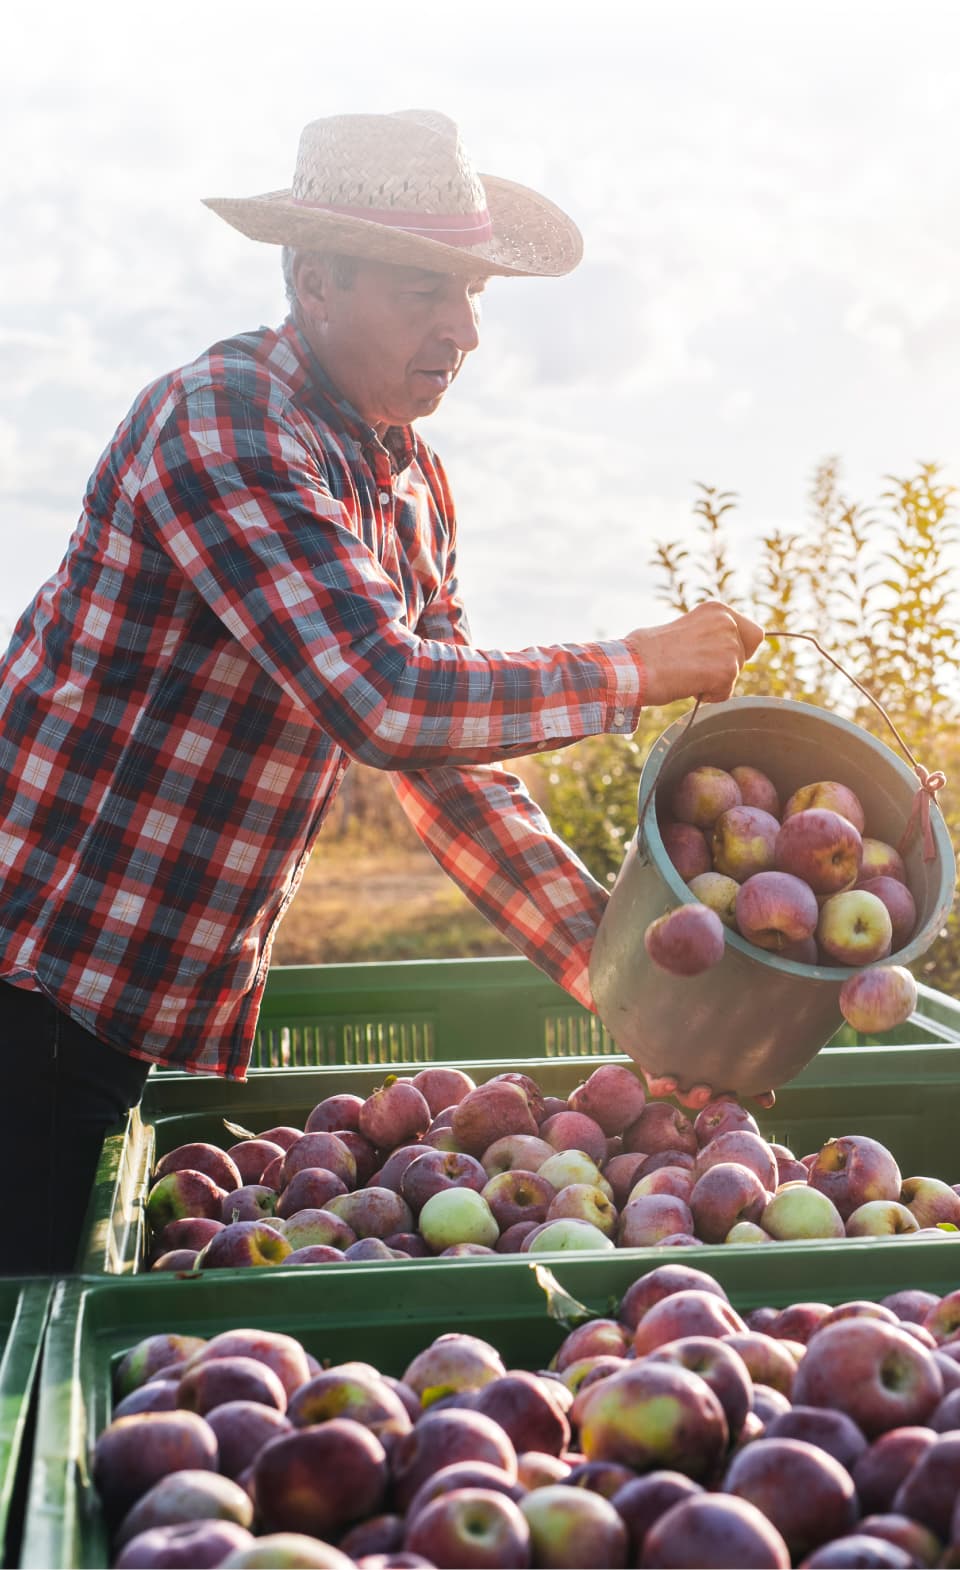 An apple farmer emptying apples into a bin.